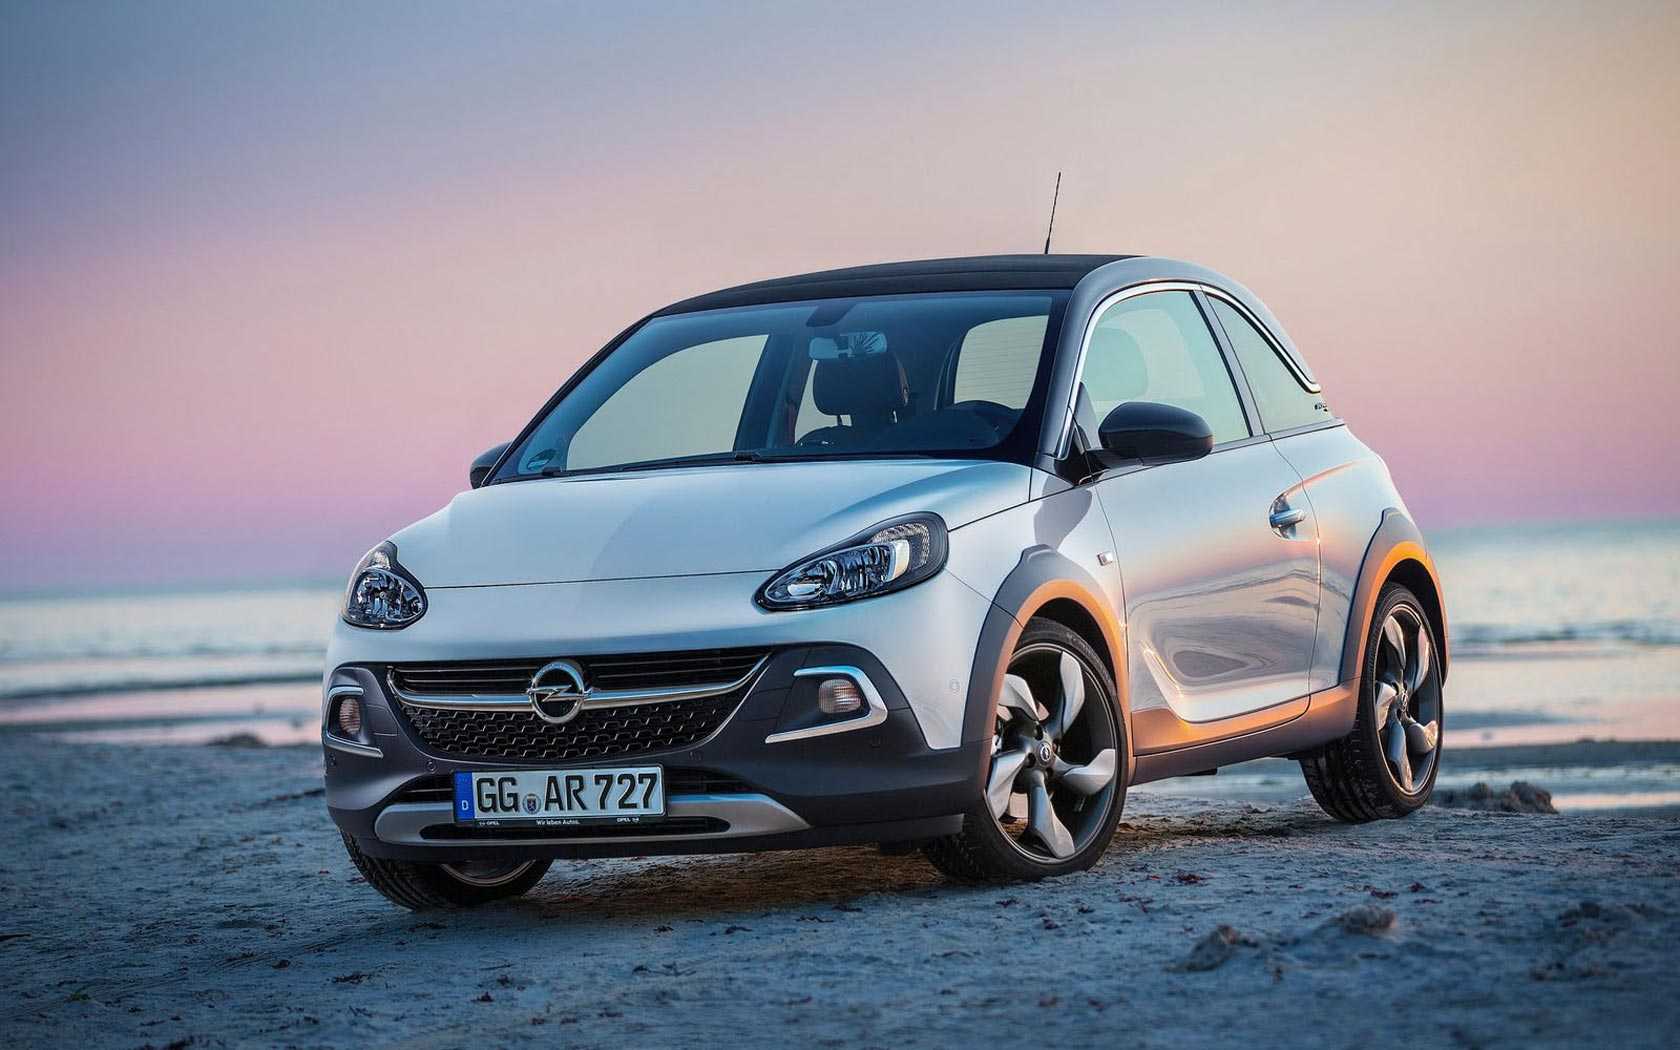 Технические характеристики Opel Adam Rocks размеры, двигатели, а так же стоимость в РФ Обзор Опель Адам Рокс с фото интерьера и экстерьера